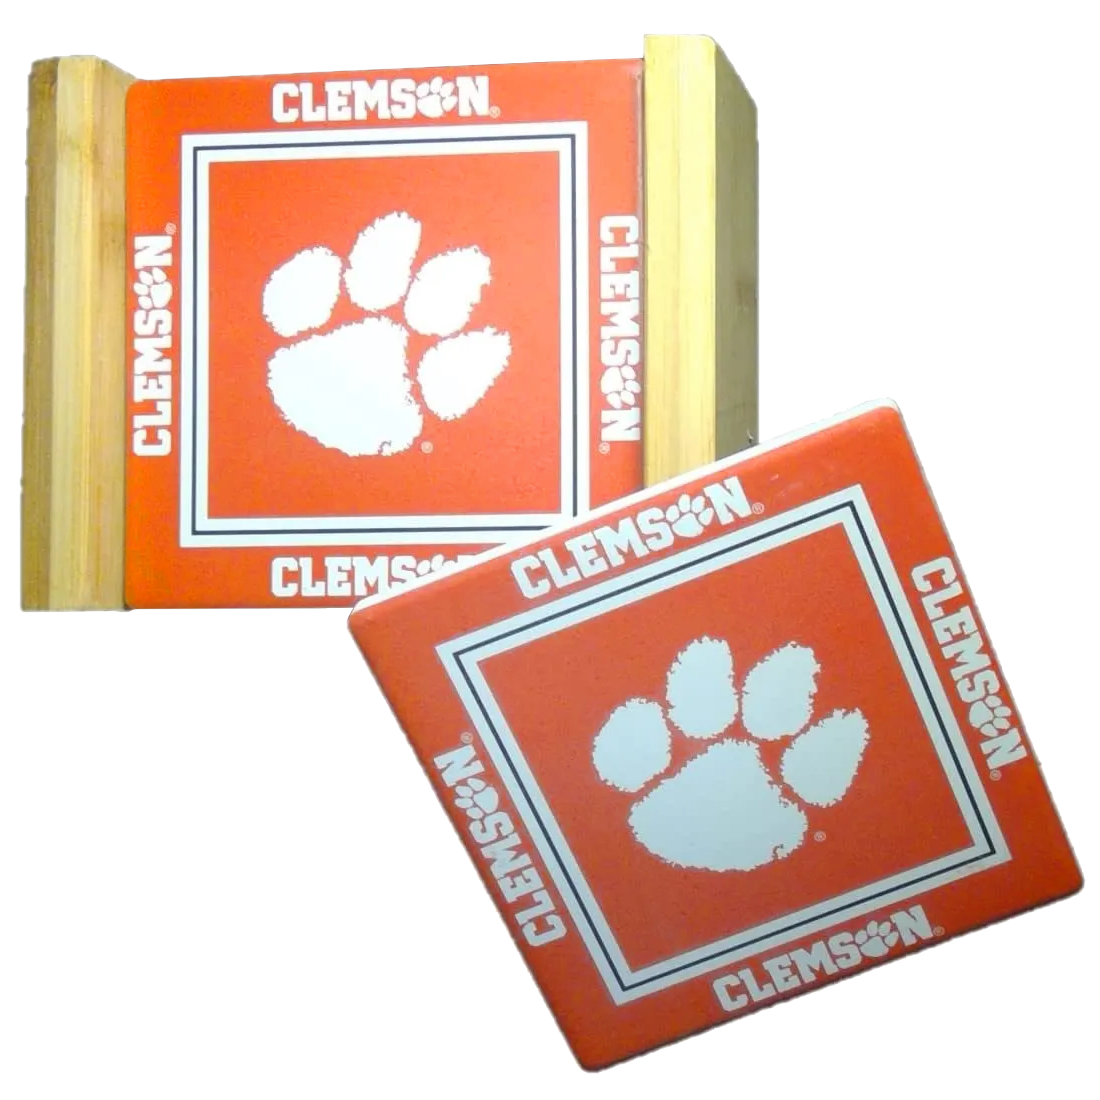 Clemson Tigers Logo Coaster Set in Woodlook Holder